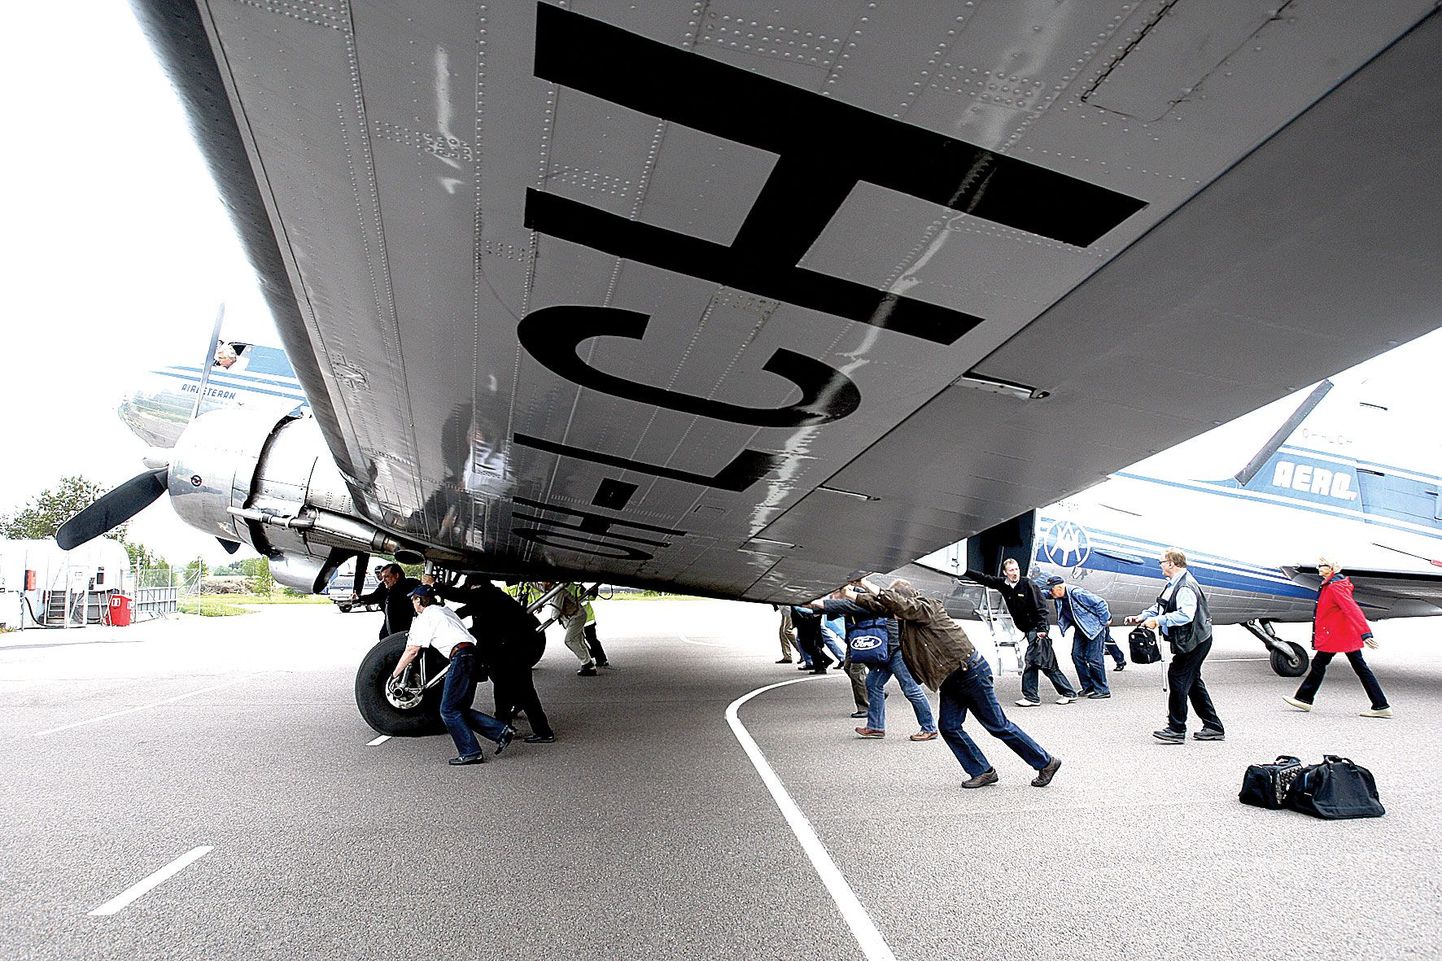 11-tonnise lennukaaluga DC-3 kasutab kütuseks bensiini, mis nii suure lennuki puhul on haruldane ja seega polnud Tartu lennujaamal pakkuda liikuvat bensiinitankurit. Nii tuli Soome õhuveteranide klubi liikmetel lennukit ise bensiinimahutile paar meetrit lähemale lükata.